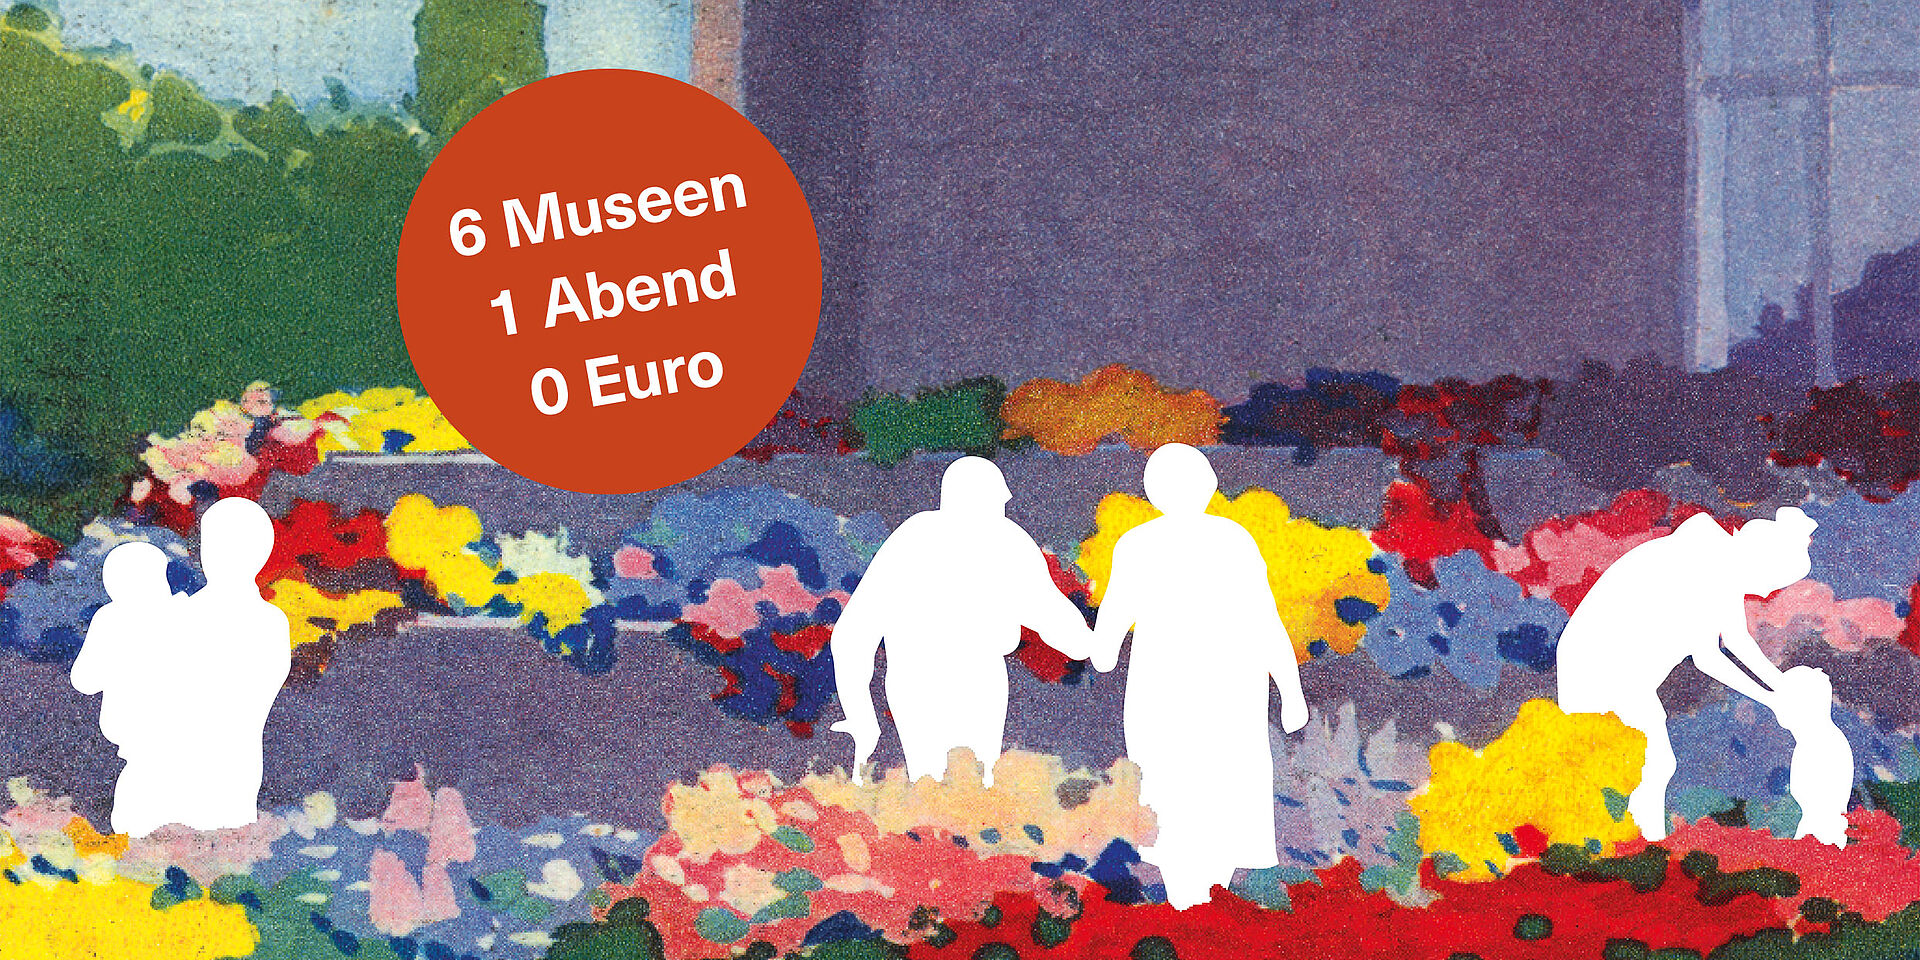 Zeichnung bunter Blumen mit weißen Umrissen von Personen, roter Kreis mit Text "6 Museen, 1 Abend, 0 Euro"